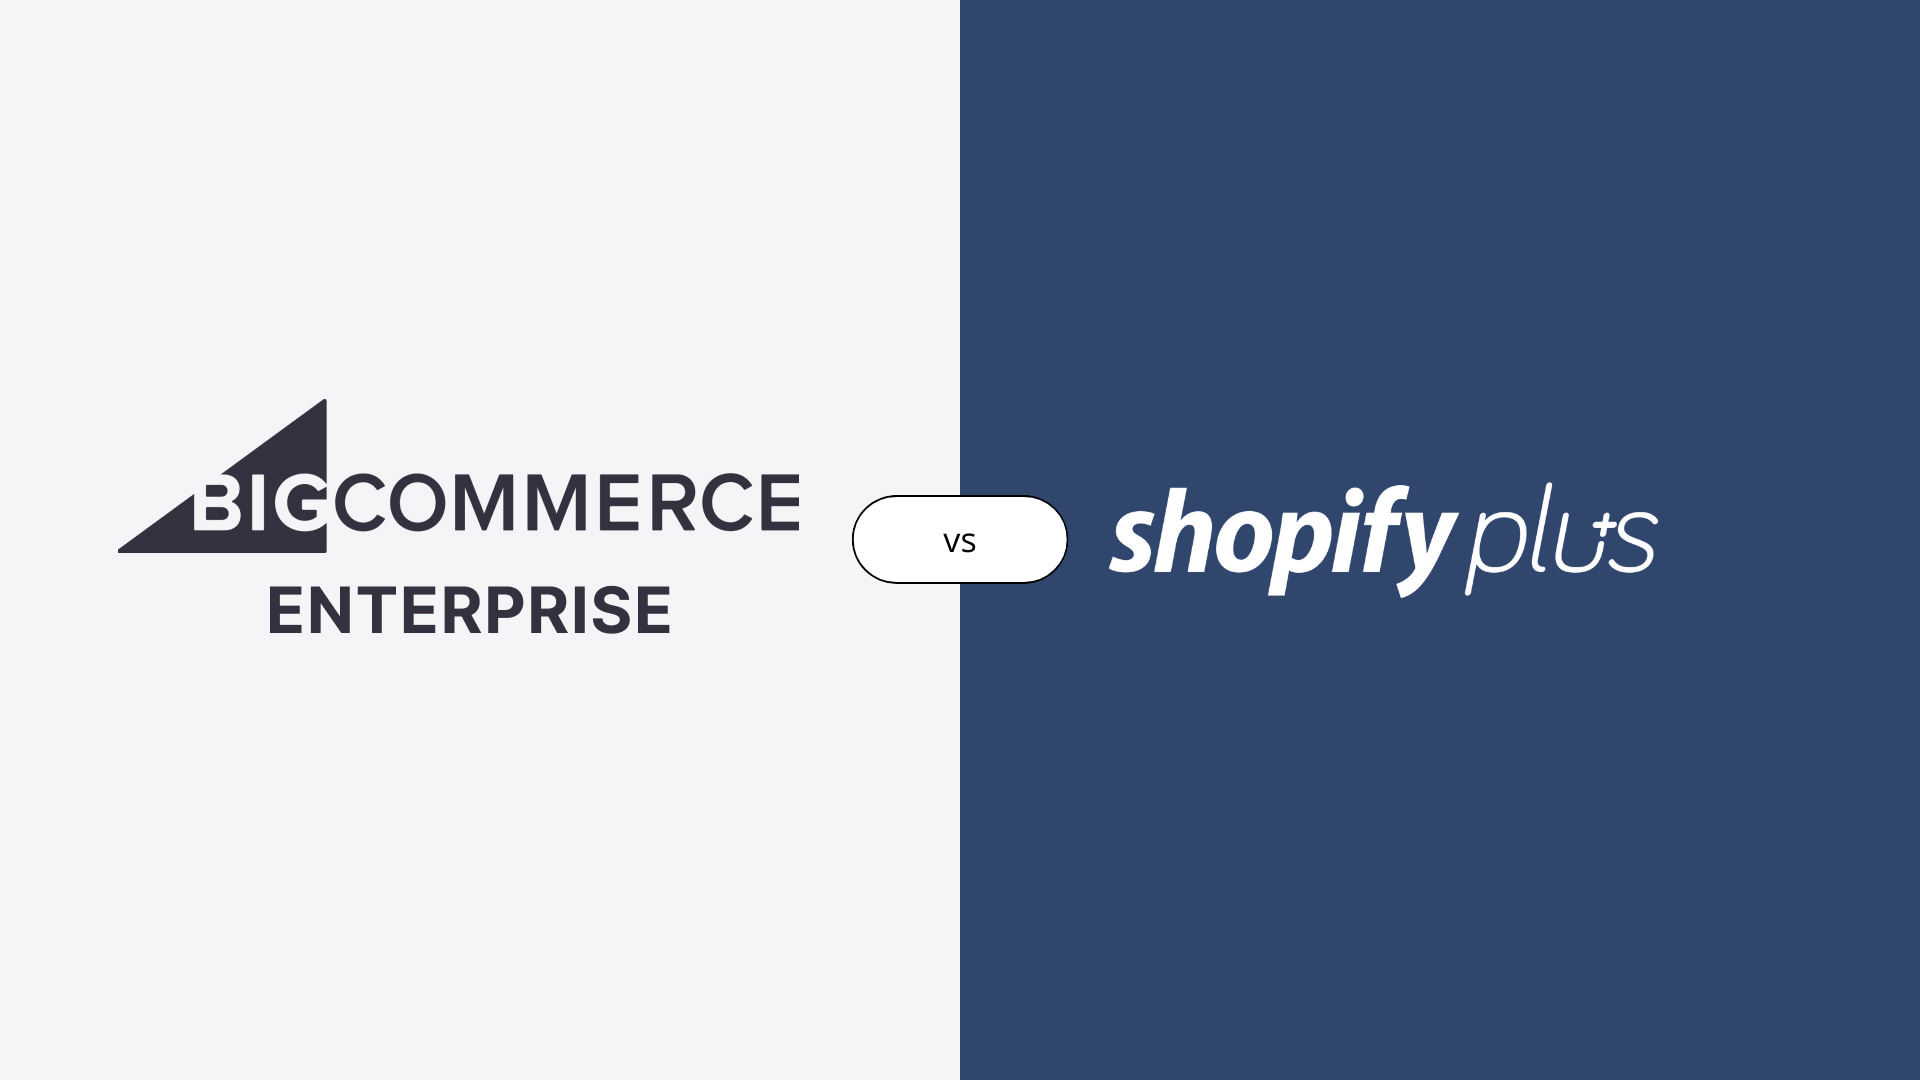 Shopify Plus vs. Bigcommerce Enterprise: Hvilken platform er bedre for din virksomhed?